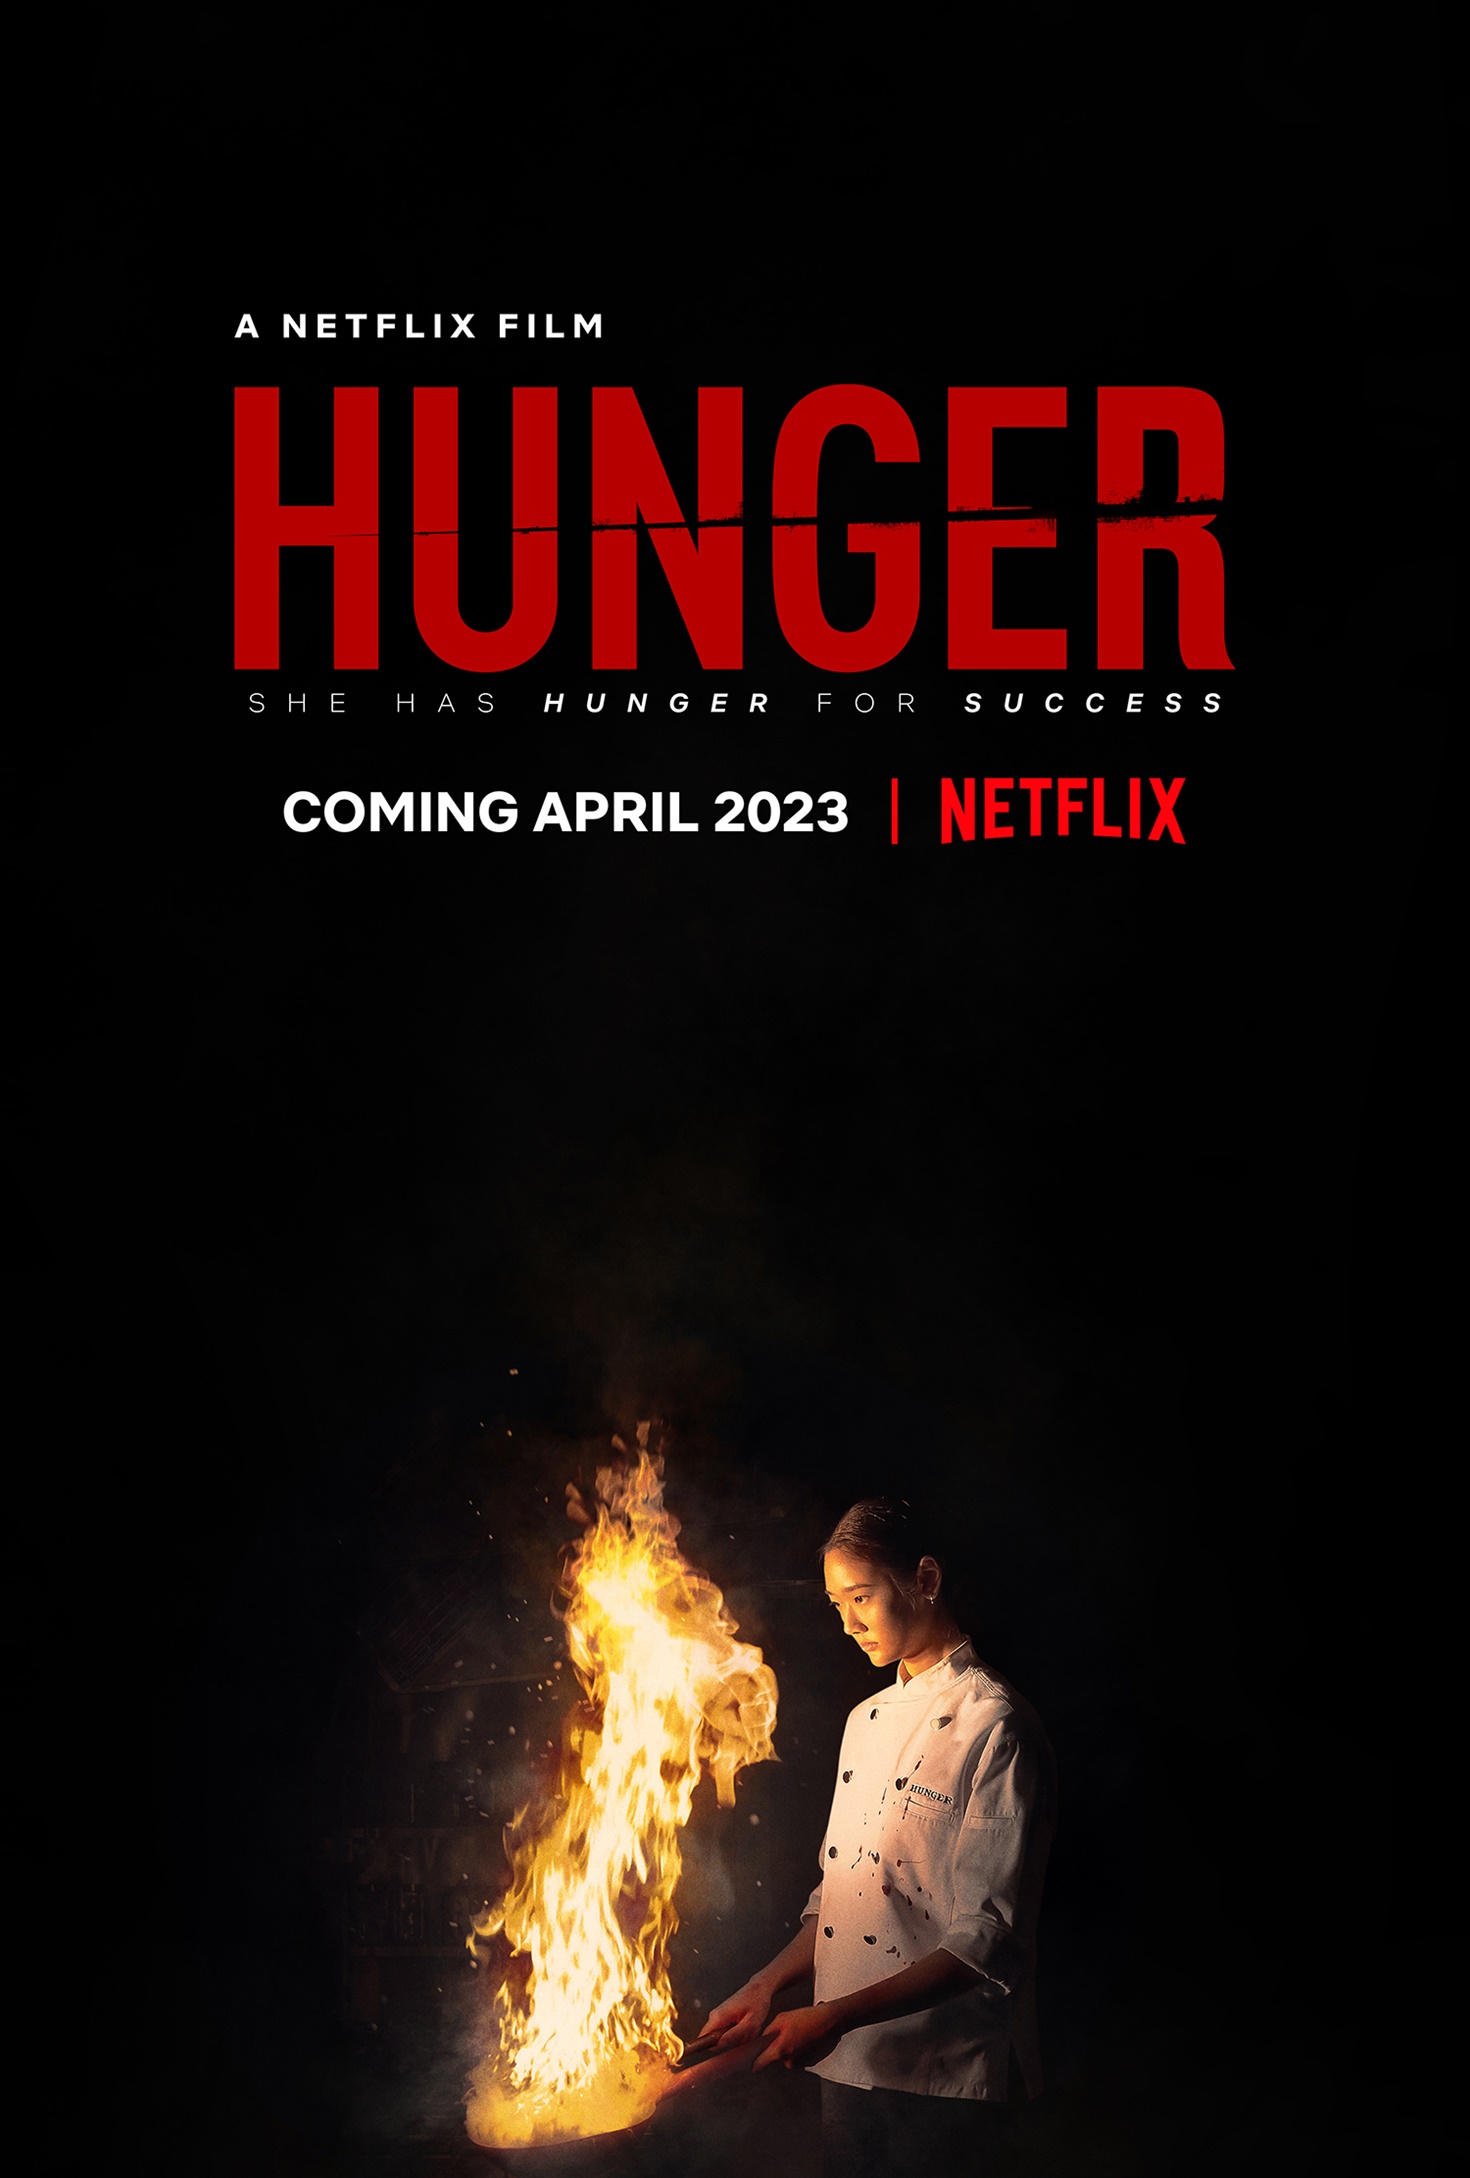 ดูหนังออนไลน์ฟรี HUNGER (2023) คนหิว เกมกระหาย หนังเต็มเรื่อง หนังมาสเตอร์ ดูหนังHD ดูหนังออนไลน์ ดูหนังใหม่